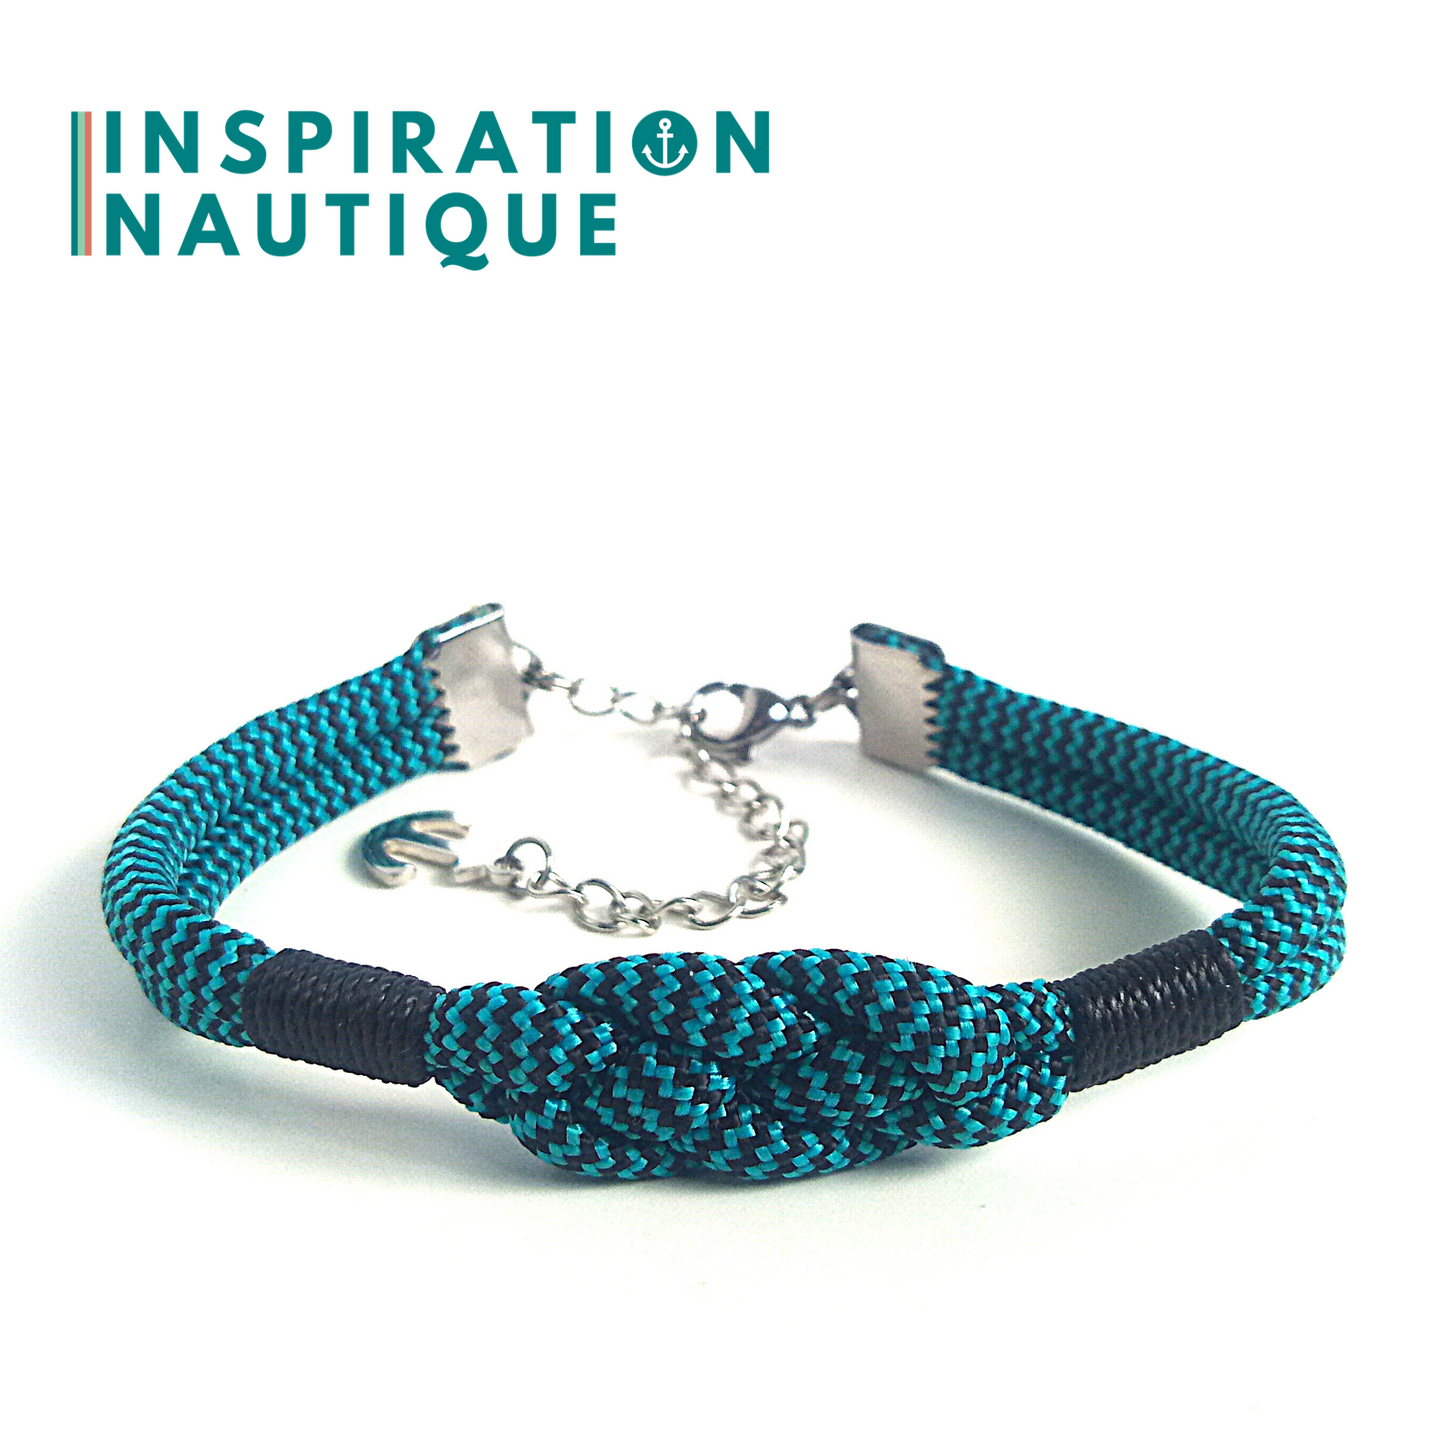 Bracelet marin avec noeud de carrick simple, en paracorde 550 et acier inoxydable, Turquoise et noir, zigzags, Surliures noires, Medium